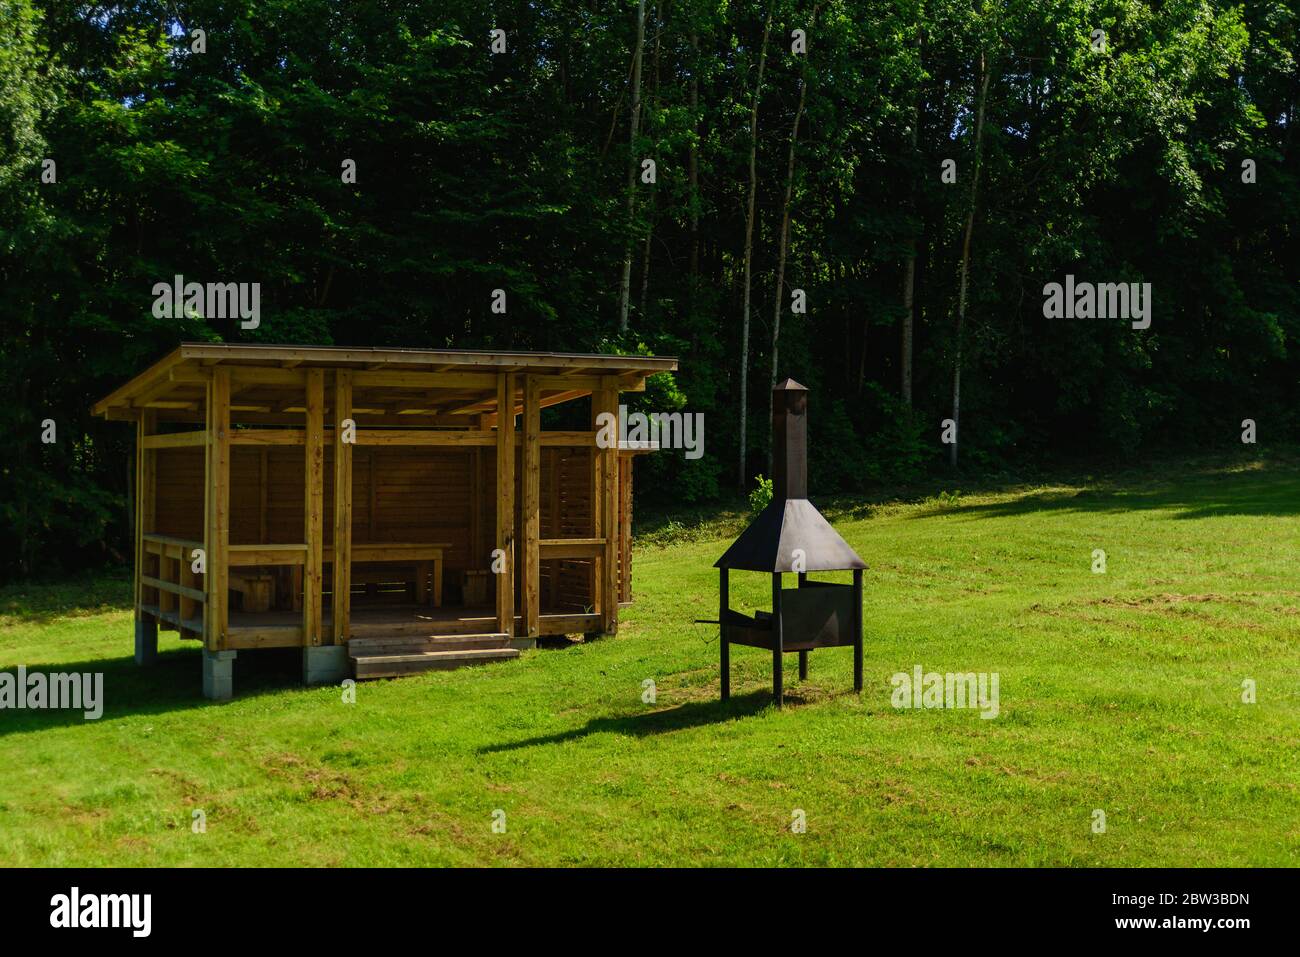 Garten oder Garten im Freien hölzerner Pavillon mit Kamin. Sommer BBQ Party Platz Stockfoto